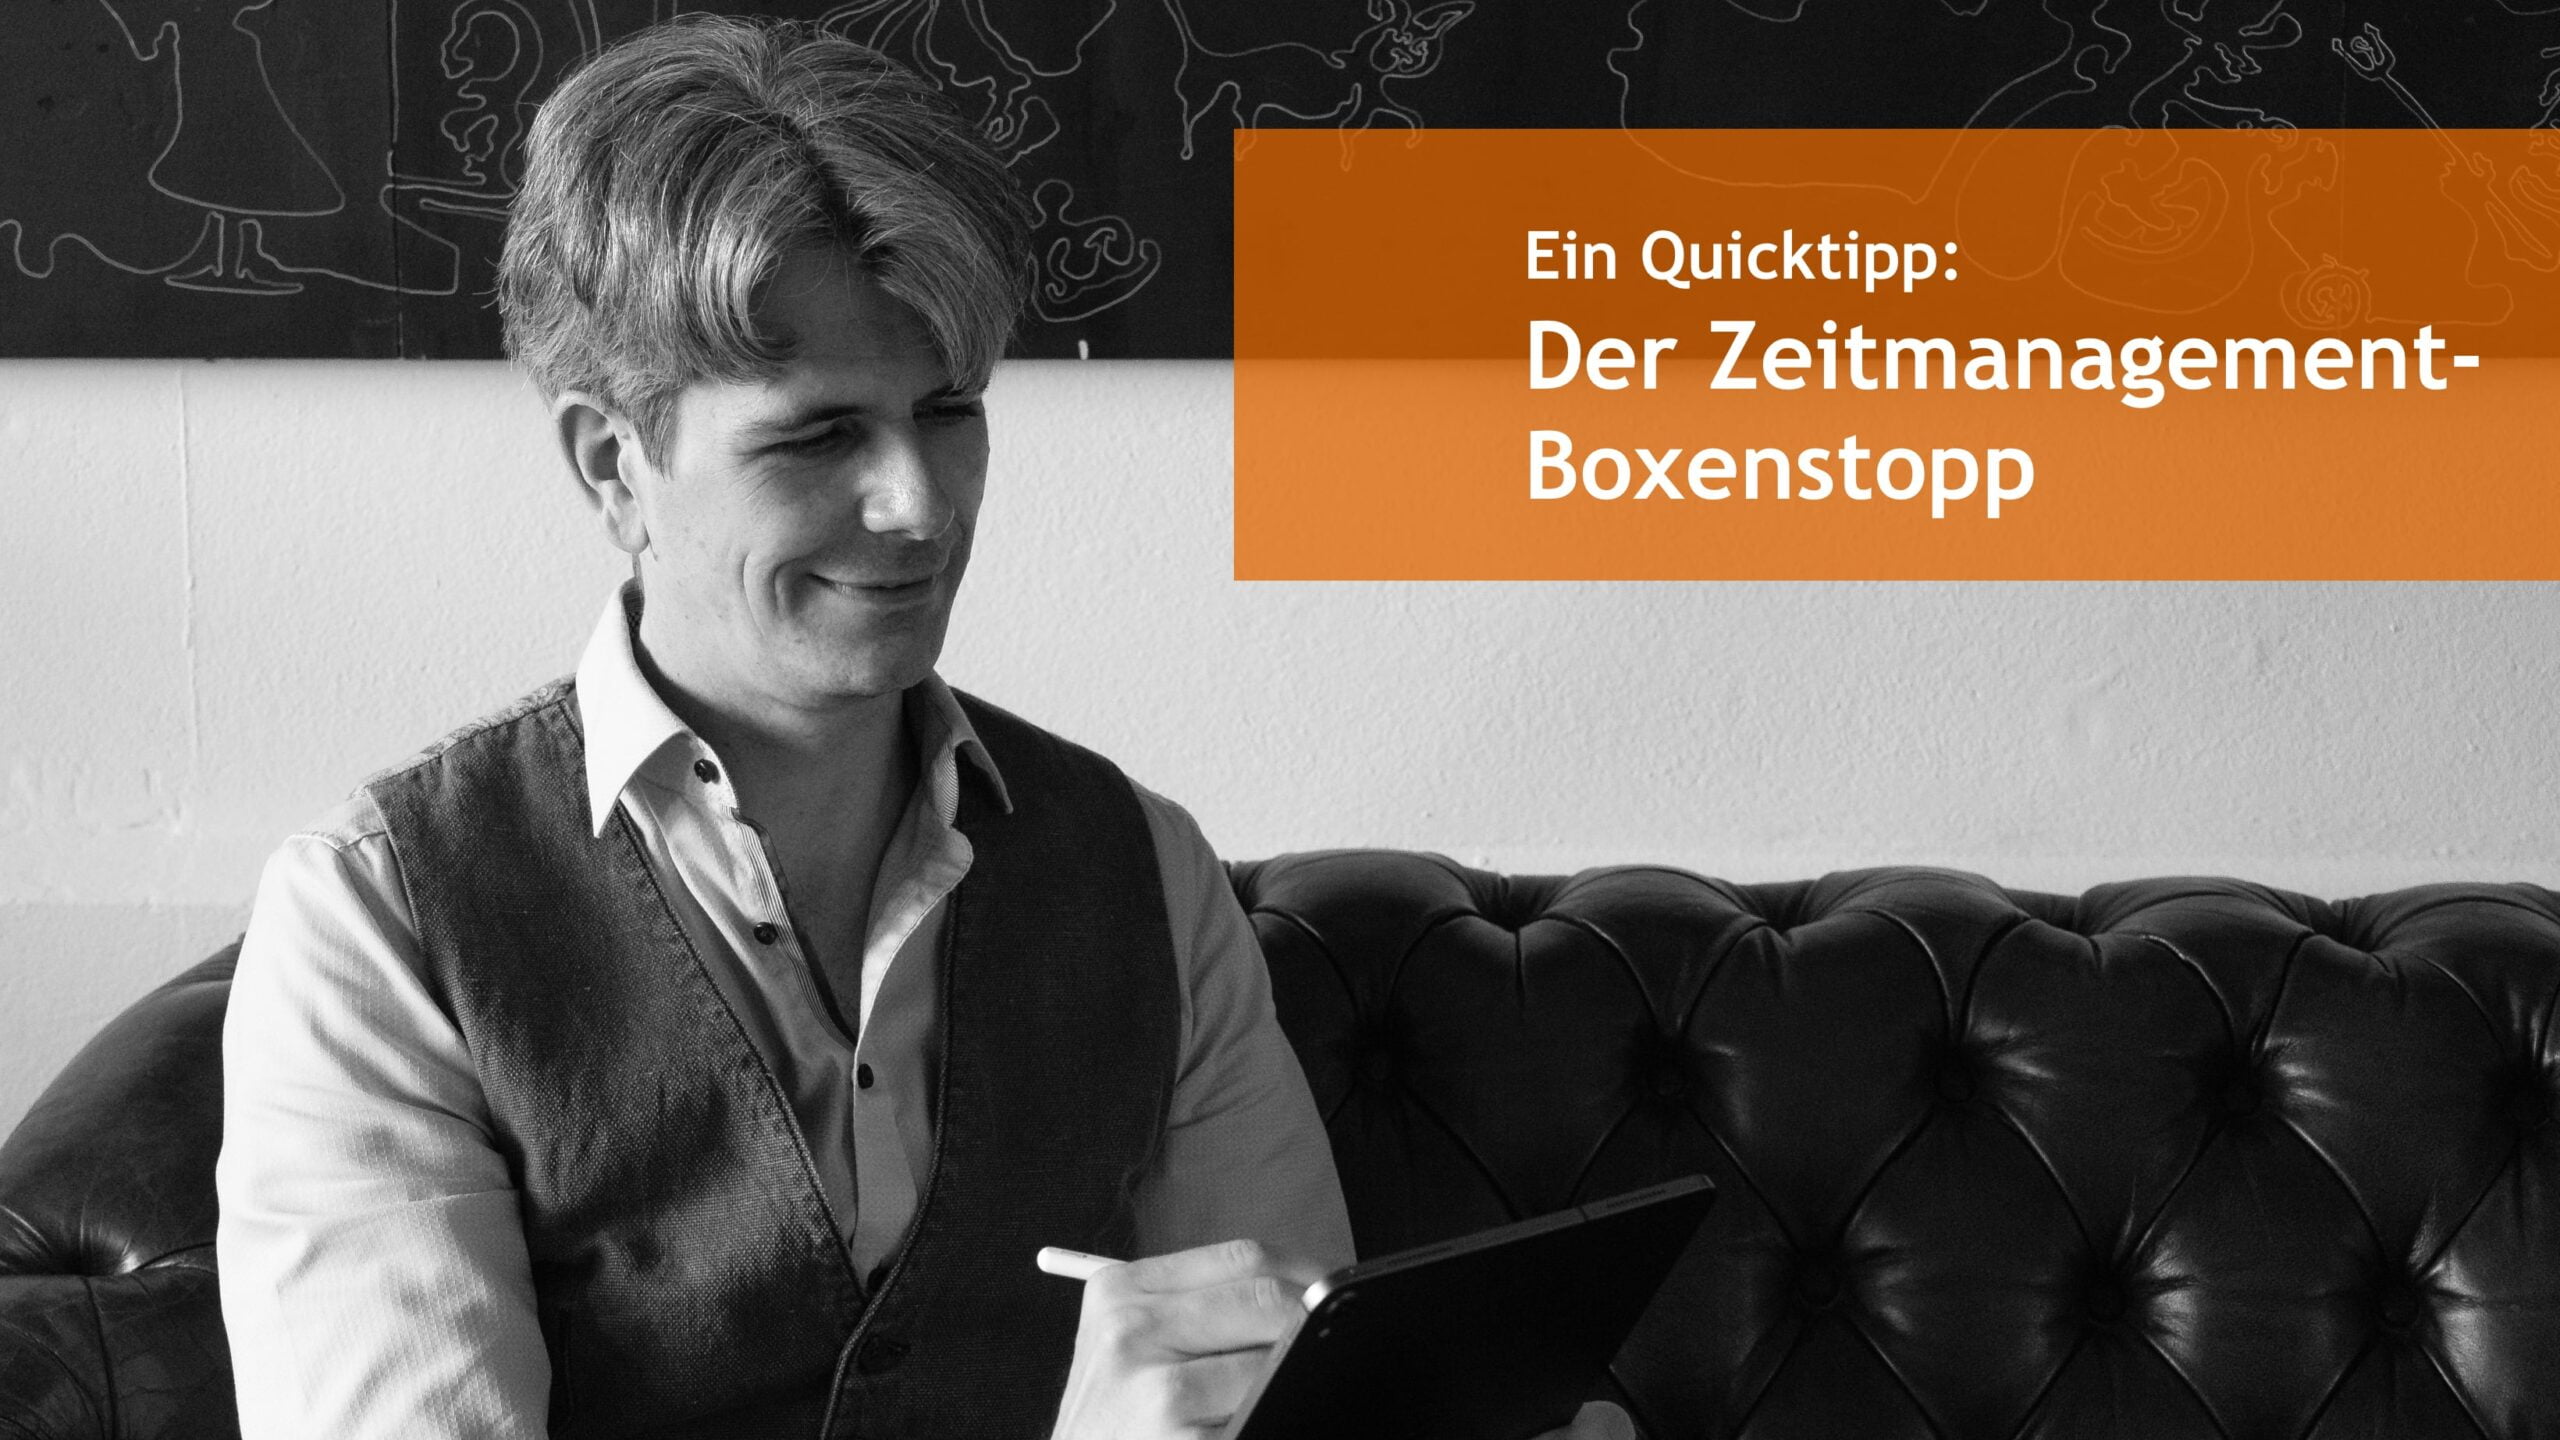 Ein Quicktipp: Der Zeitmanagement-Boxenstopp